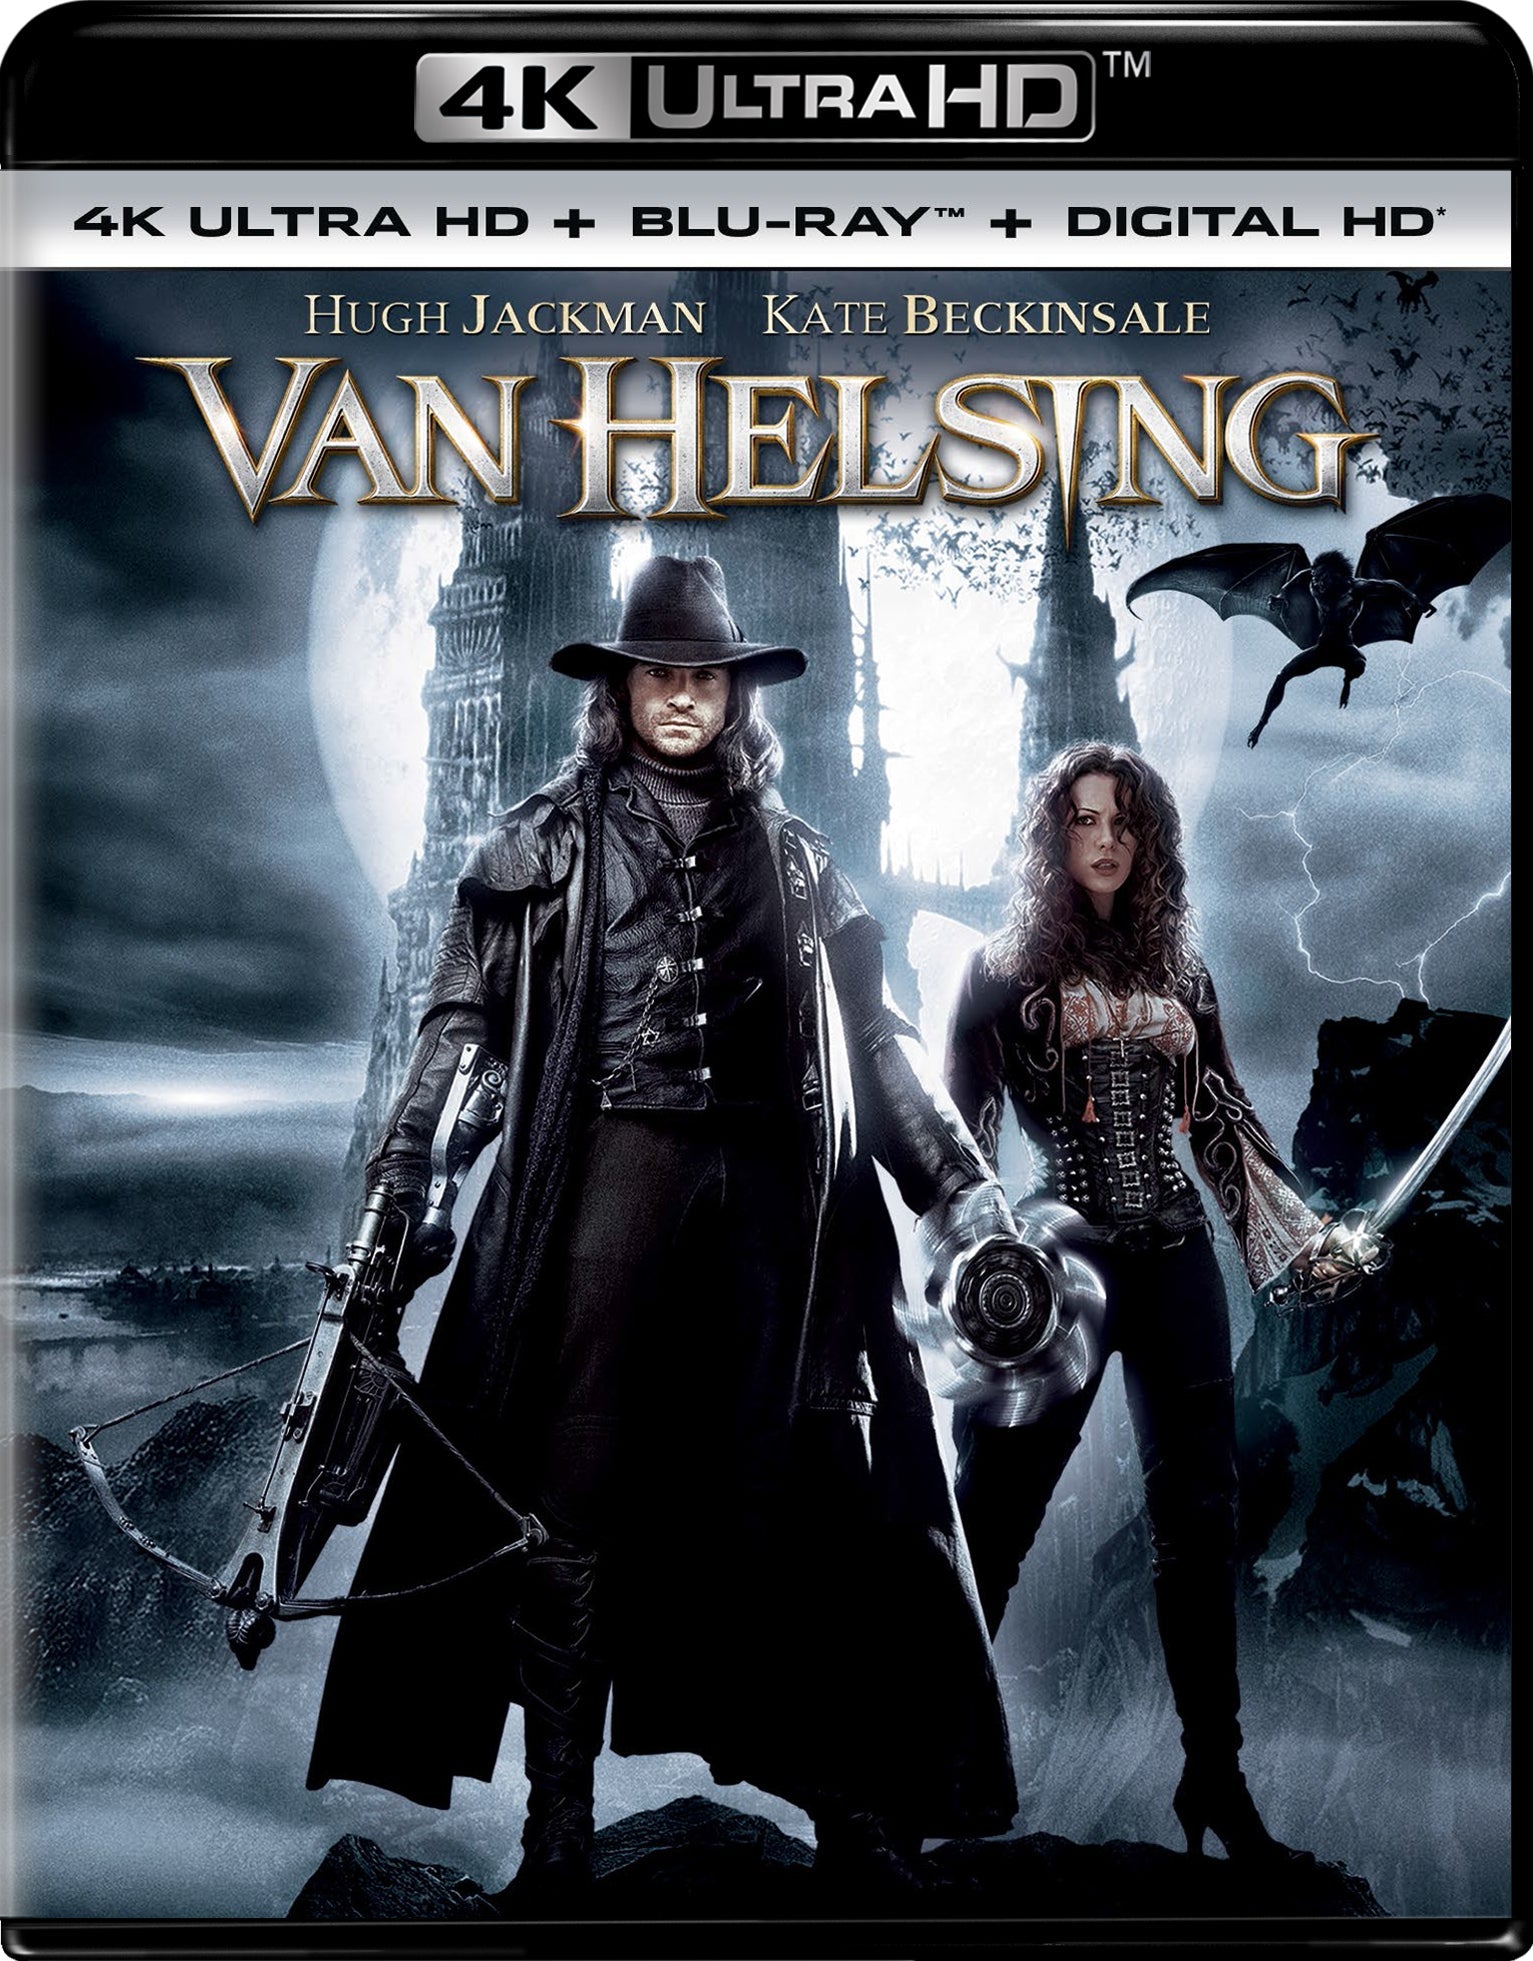 Van Helsing 4K UHD  Blu-ray Digital